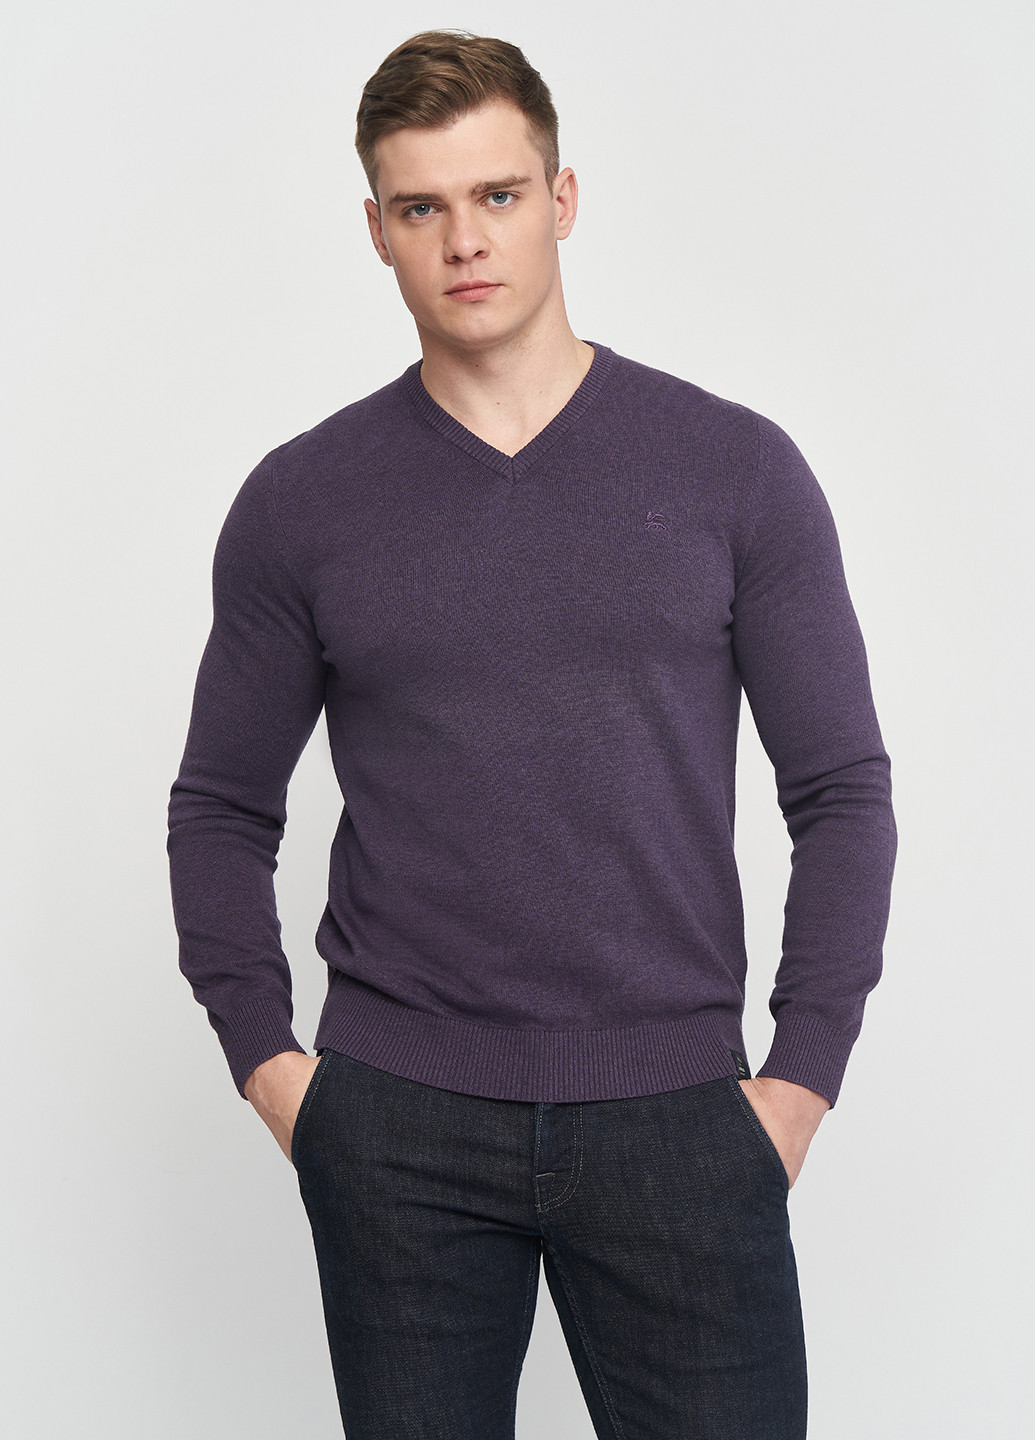 Фиолетовый демисезонный пуловер пуловер Lerros